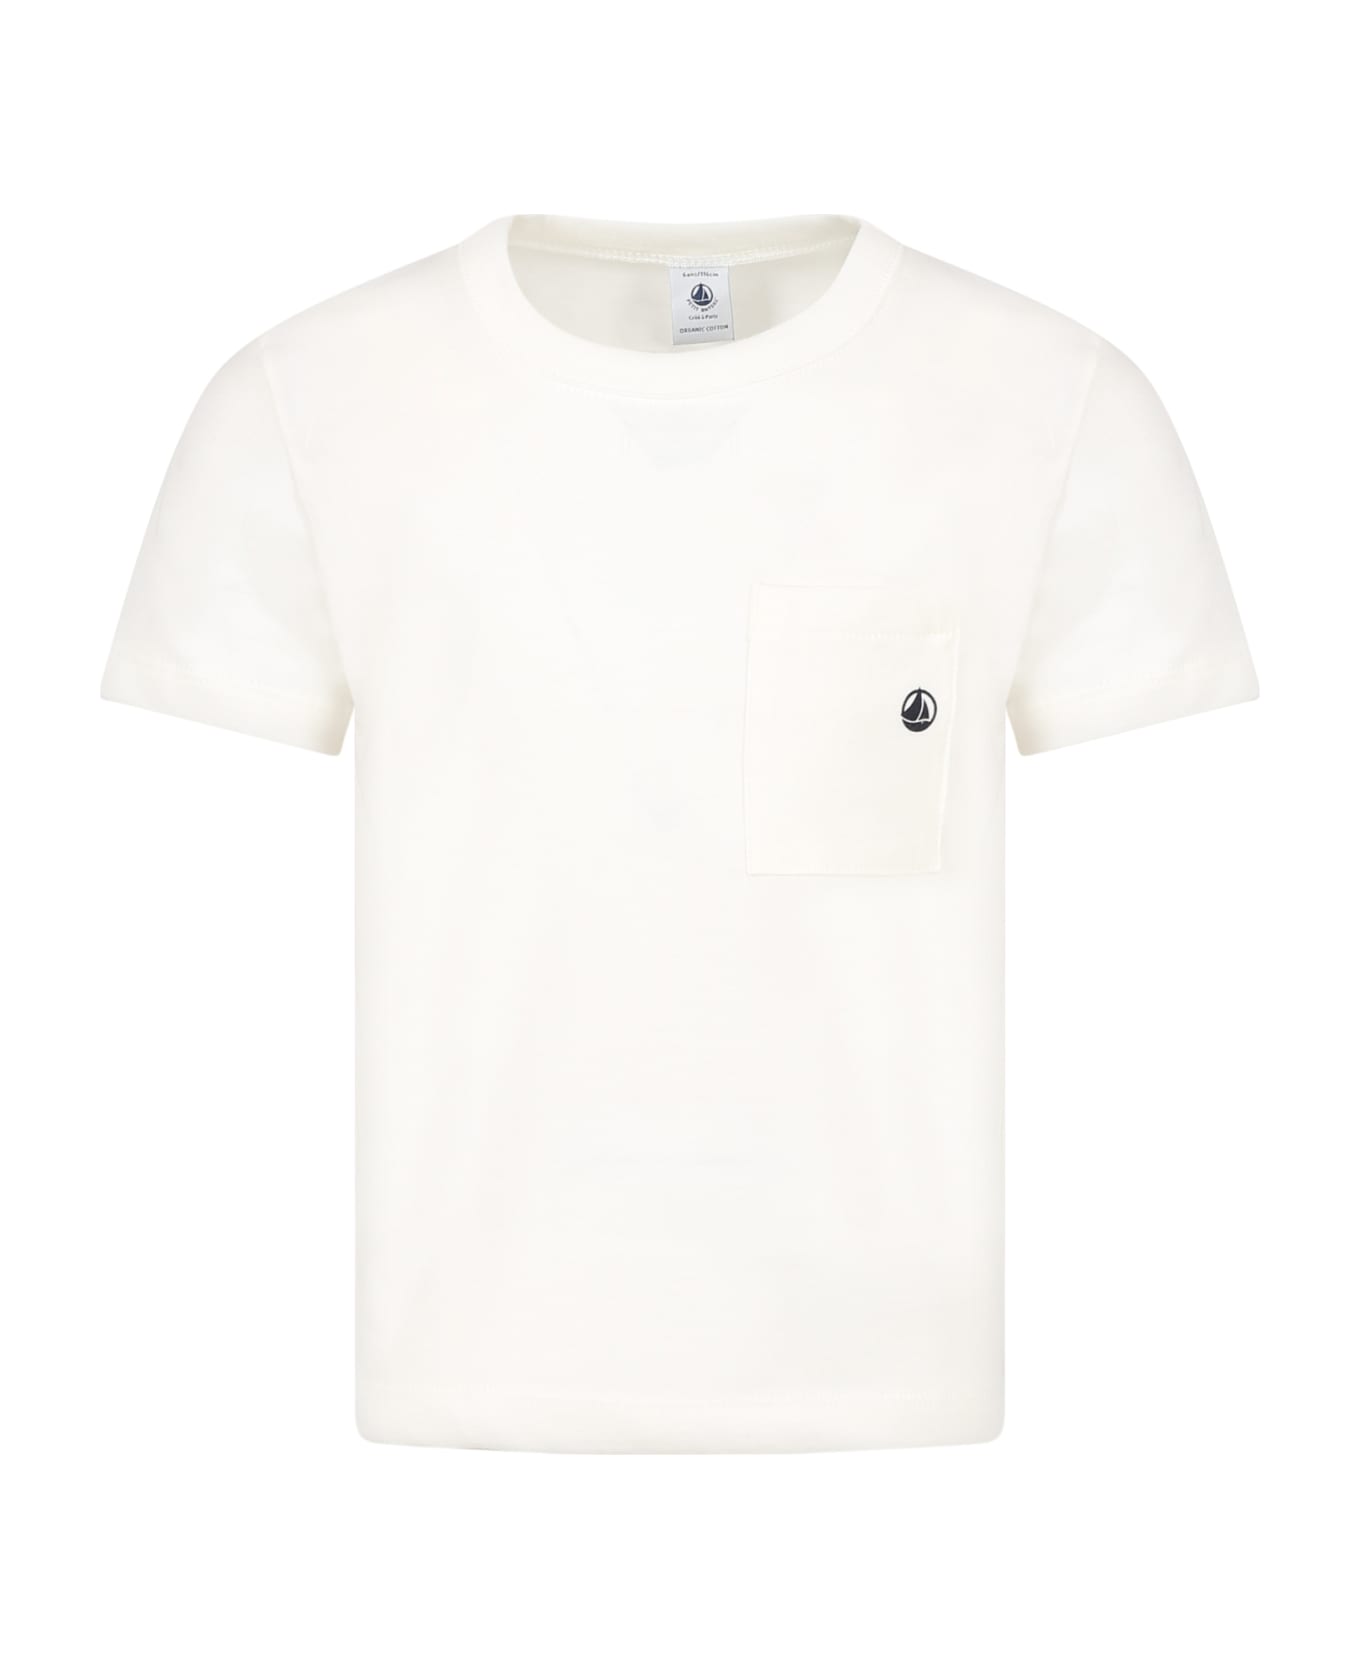 Petit Bateau Ivory T-shirt For Boy With Logo - Ivory